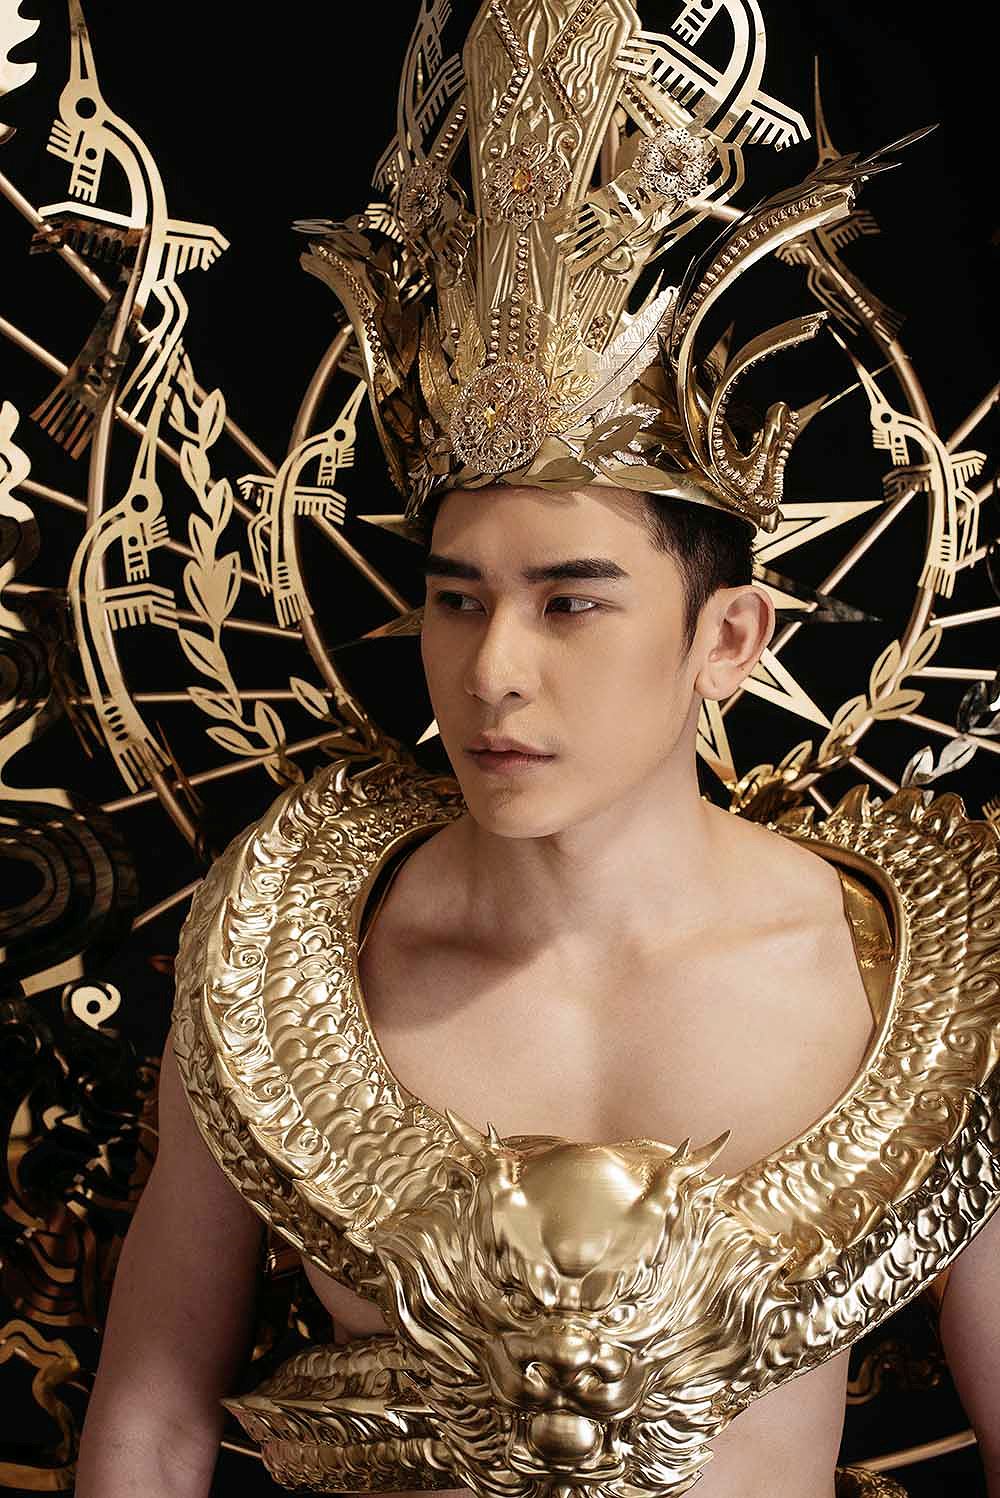 Đại diện Việt Nam mang trang phục dát vàng nặng 40kg đến cuộc thi Mister International-2